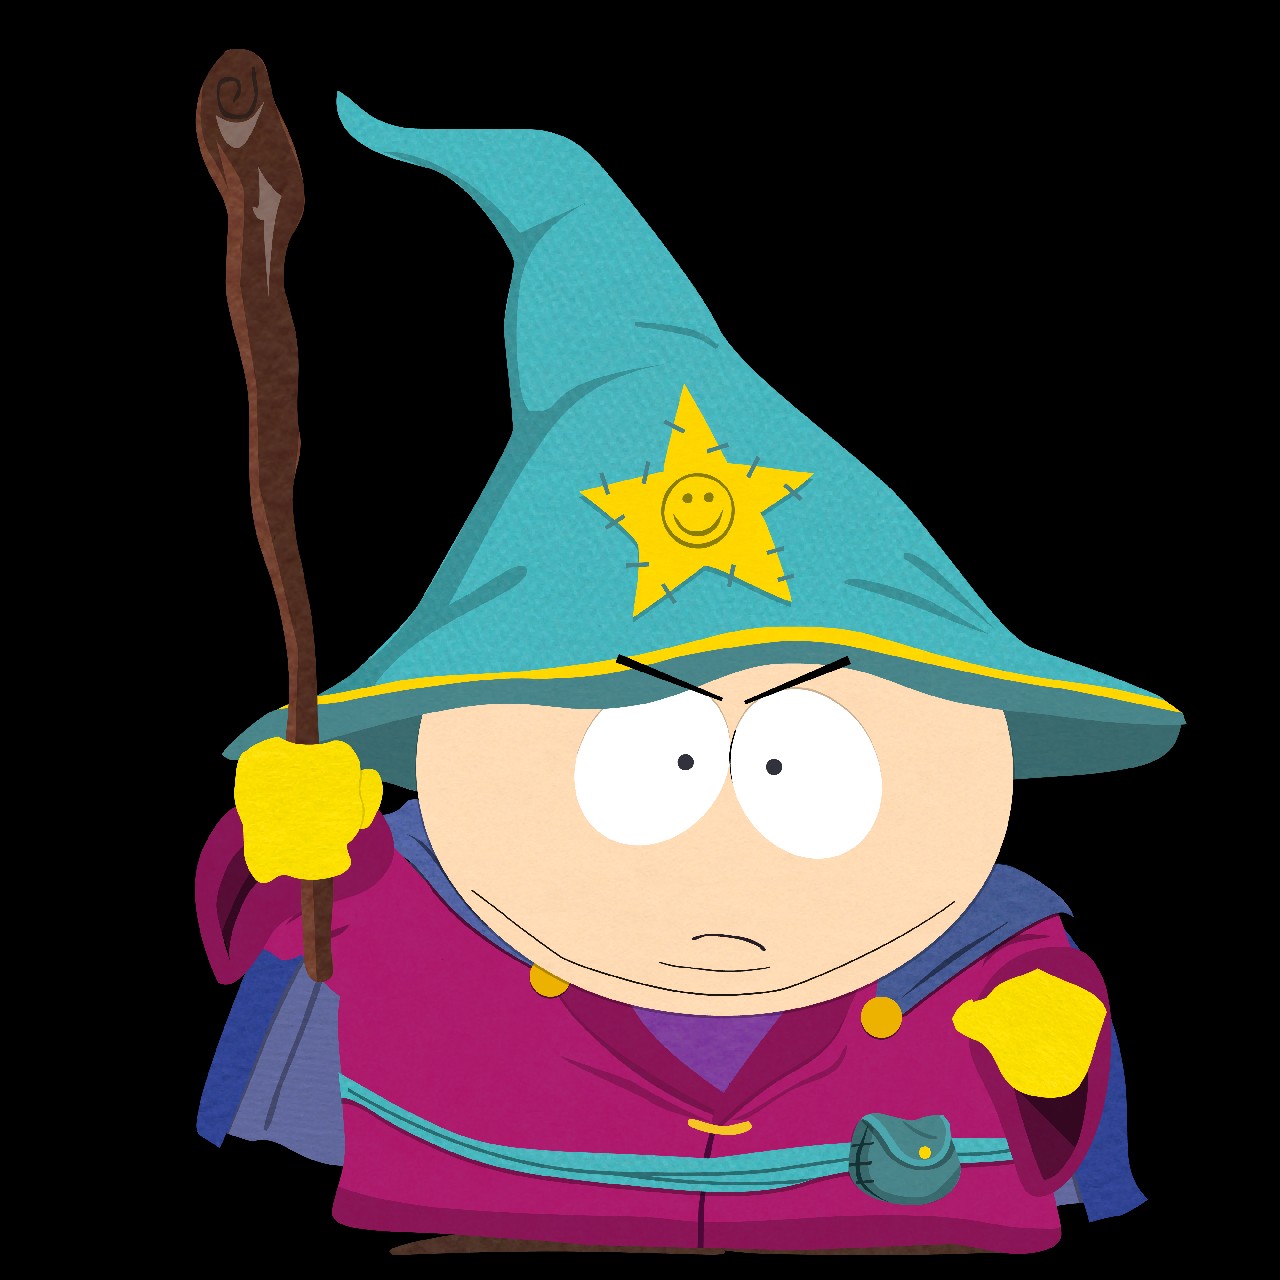 نجات به سبک South Park | پیش‌نمایش South Park: The Stick of Truth 1